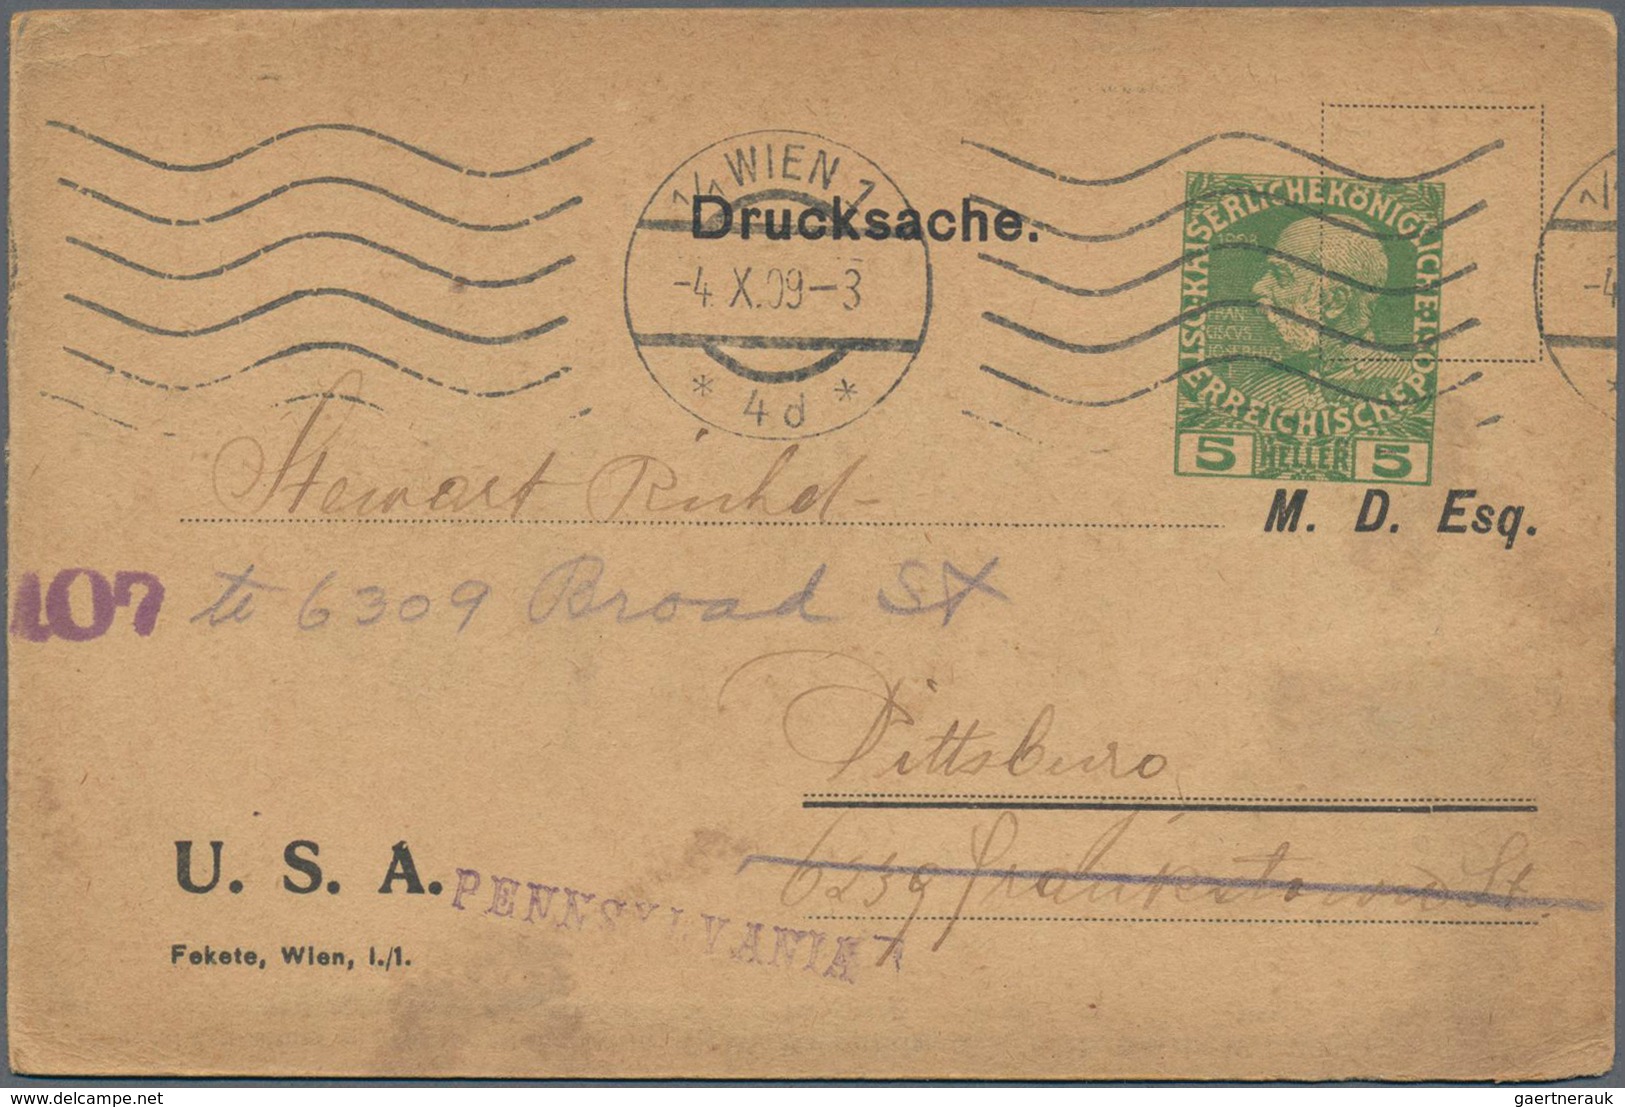 Österreich: 1890/2005, ca. 710 ungebrauchten und gebrauchten Ganzsachen incl. einiger weniger Briefe